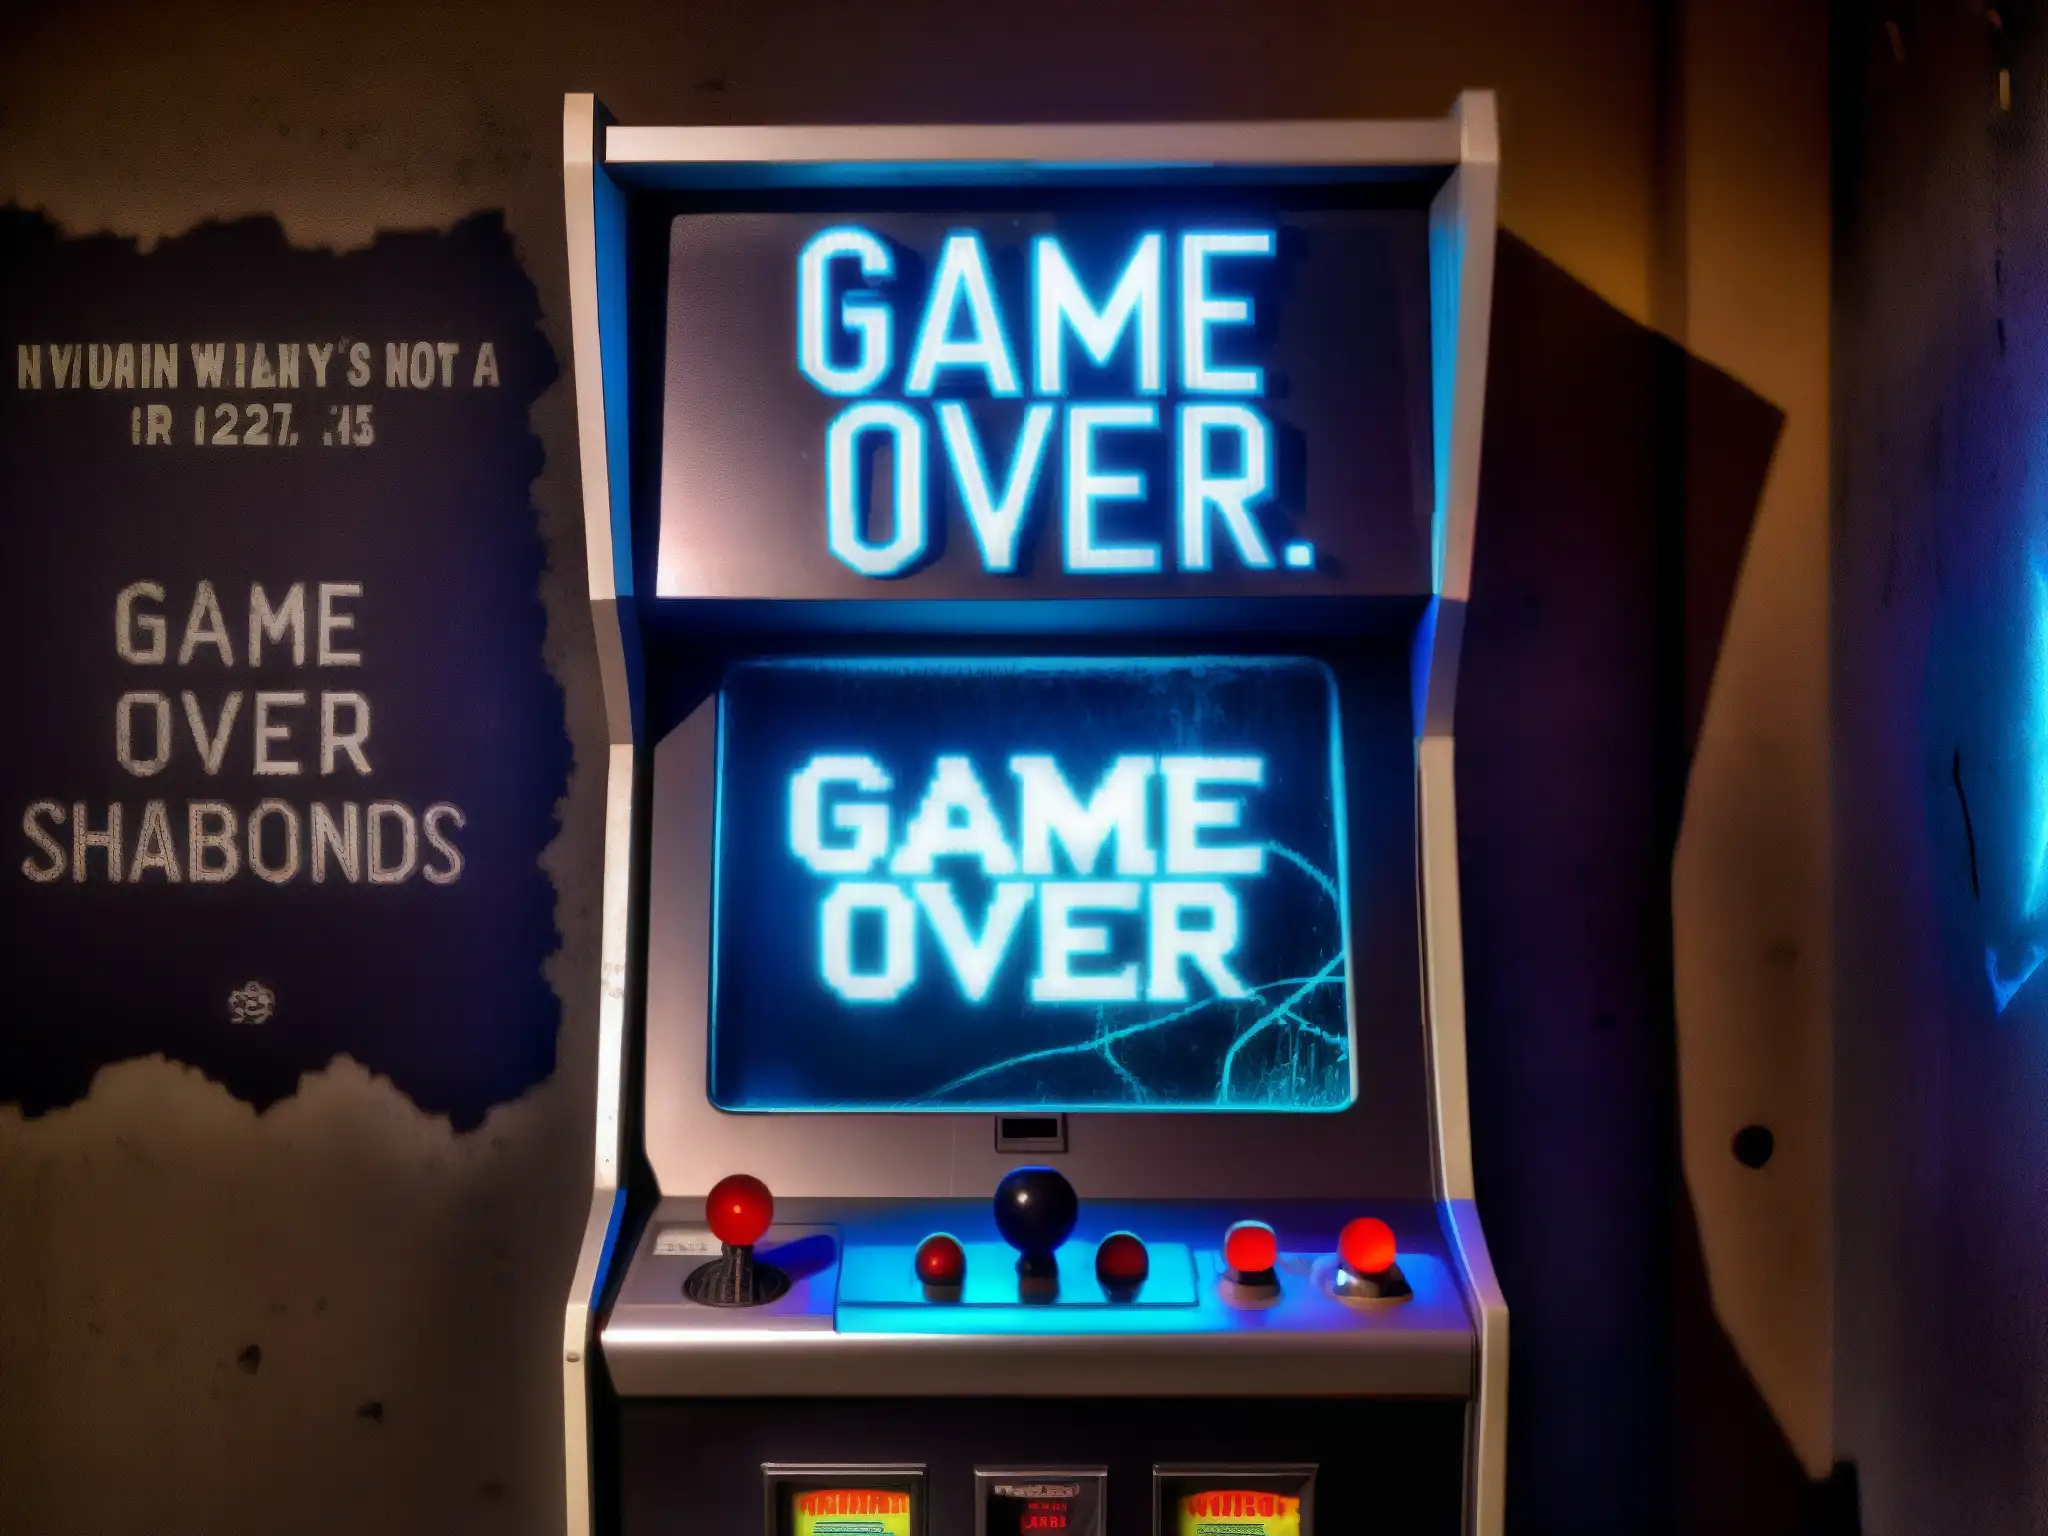 Imagen impactante de una máquina de arcade abandonada, cubierta de polvo y telarañas, con un inquietante mensaje 'Game Over' en la pantalla